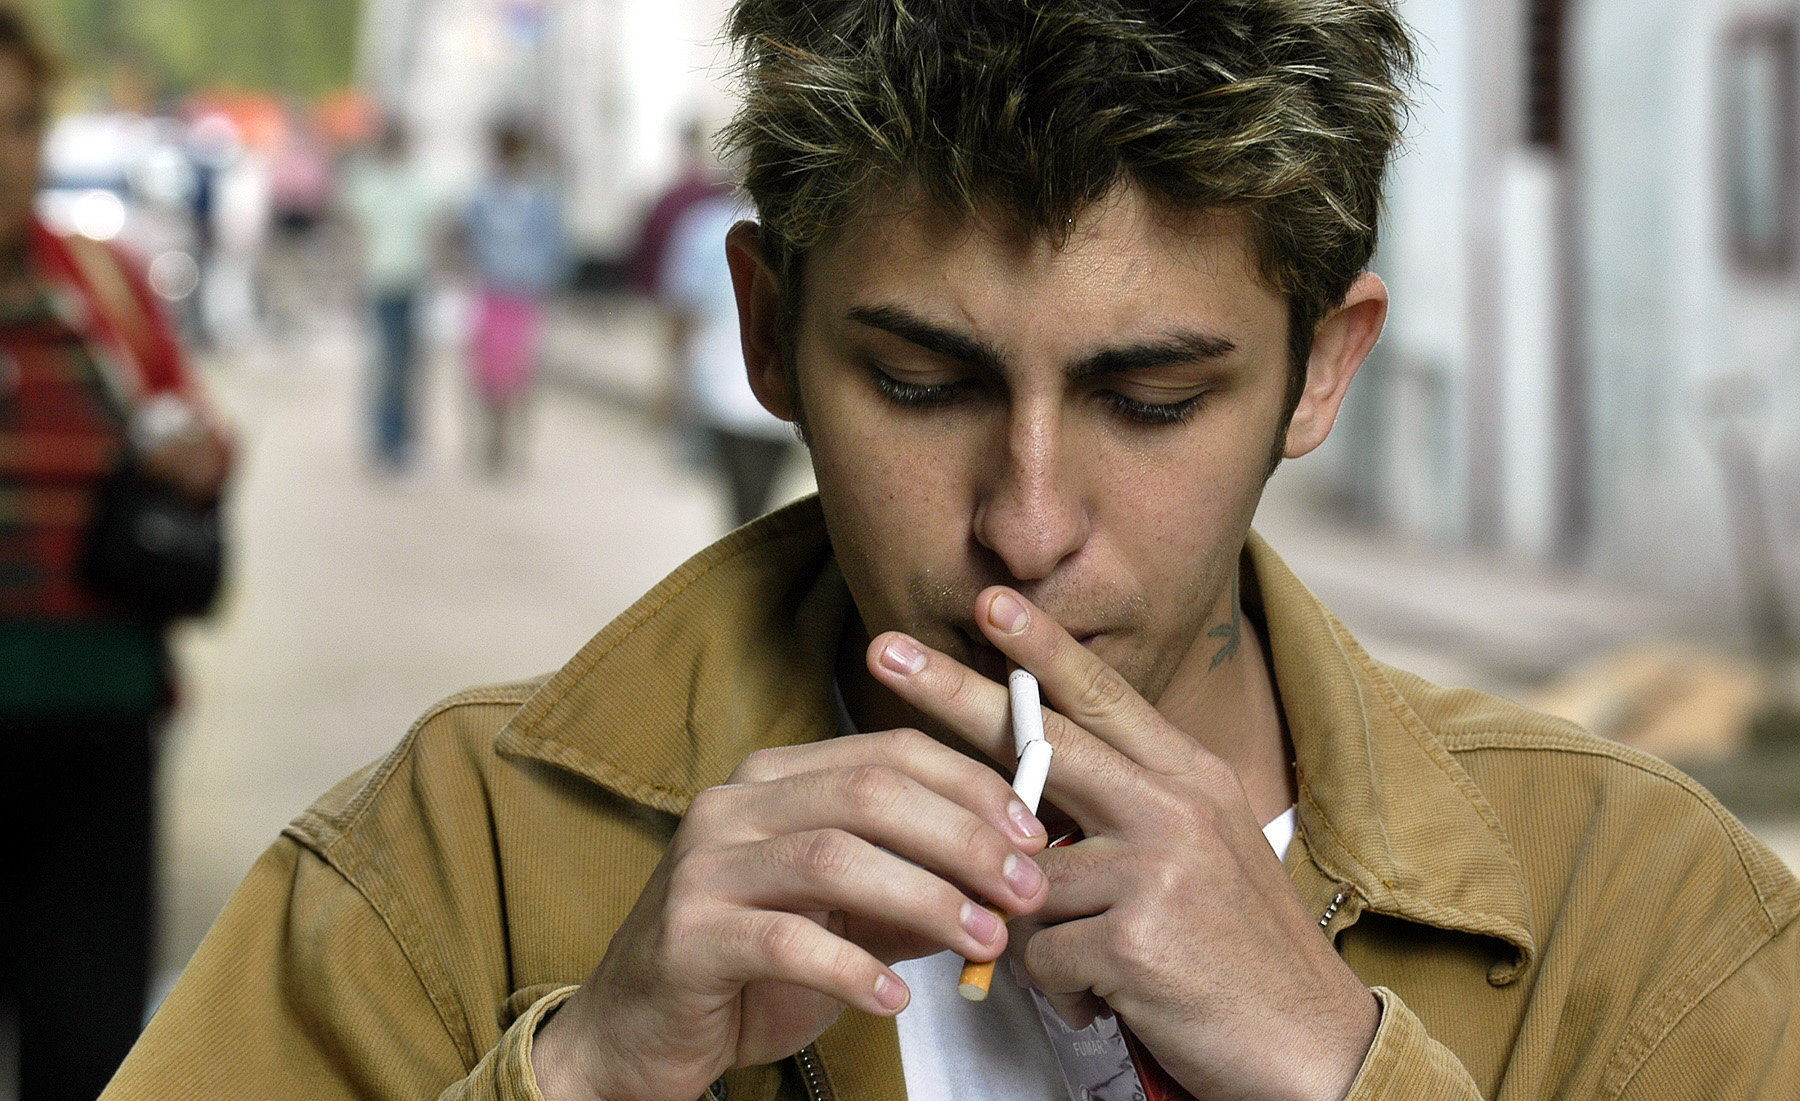 La OMS exhorta a los gobiernos a aumentar el impuesto al tabaco para reducir su consumo.